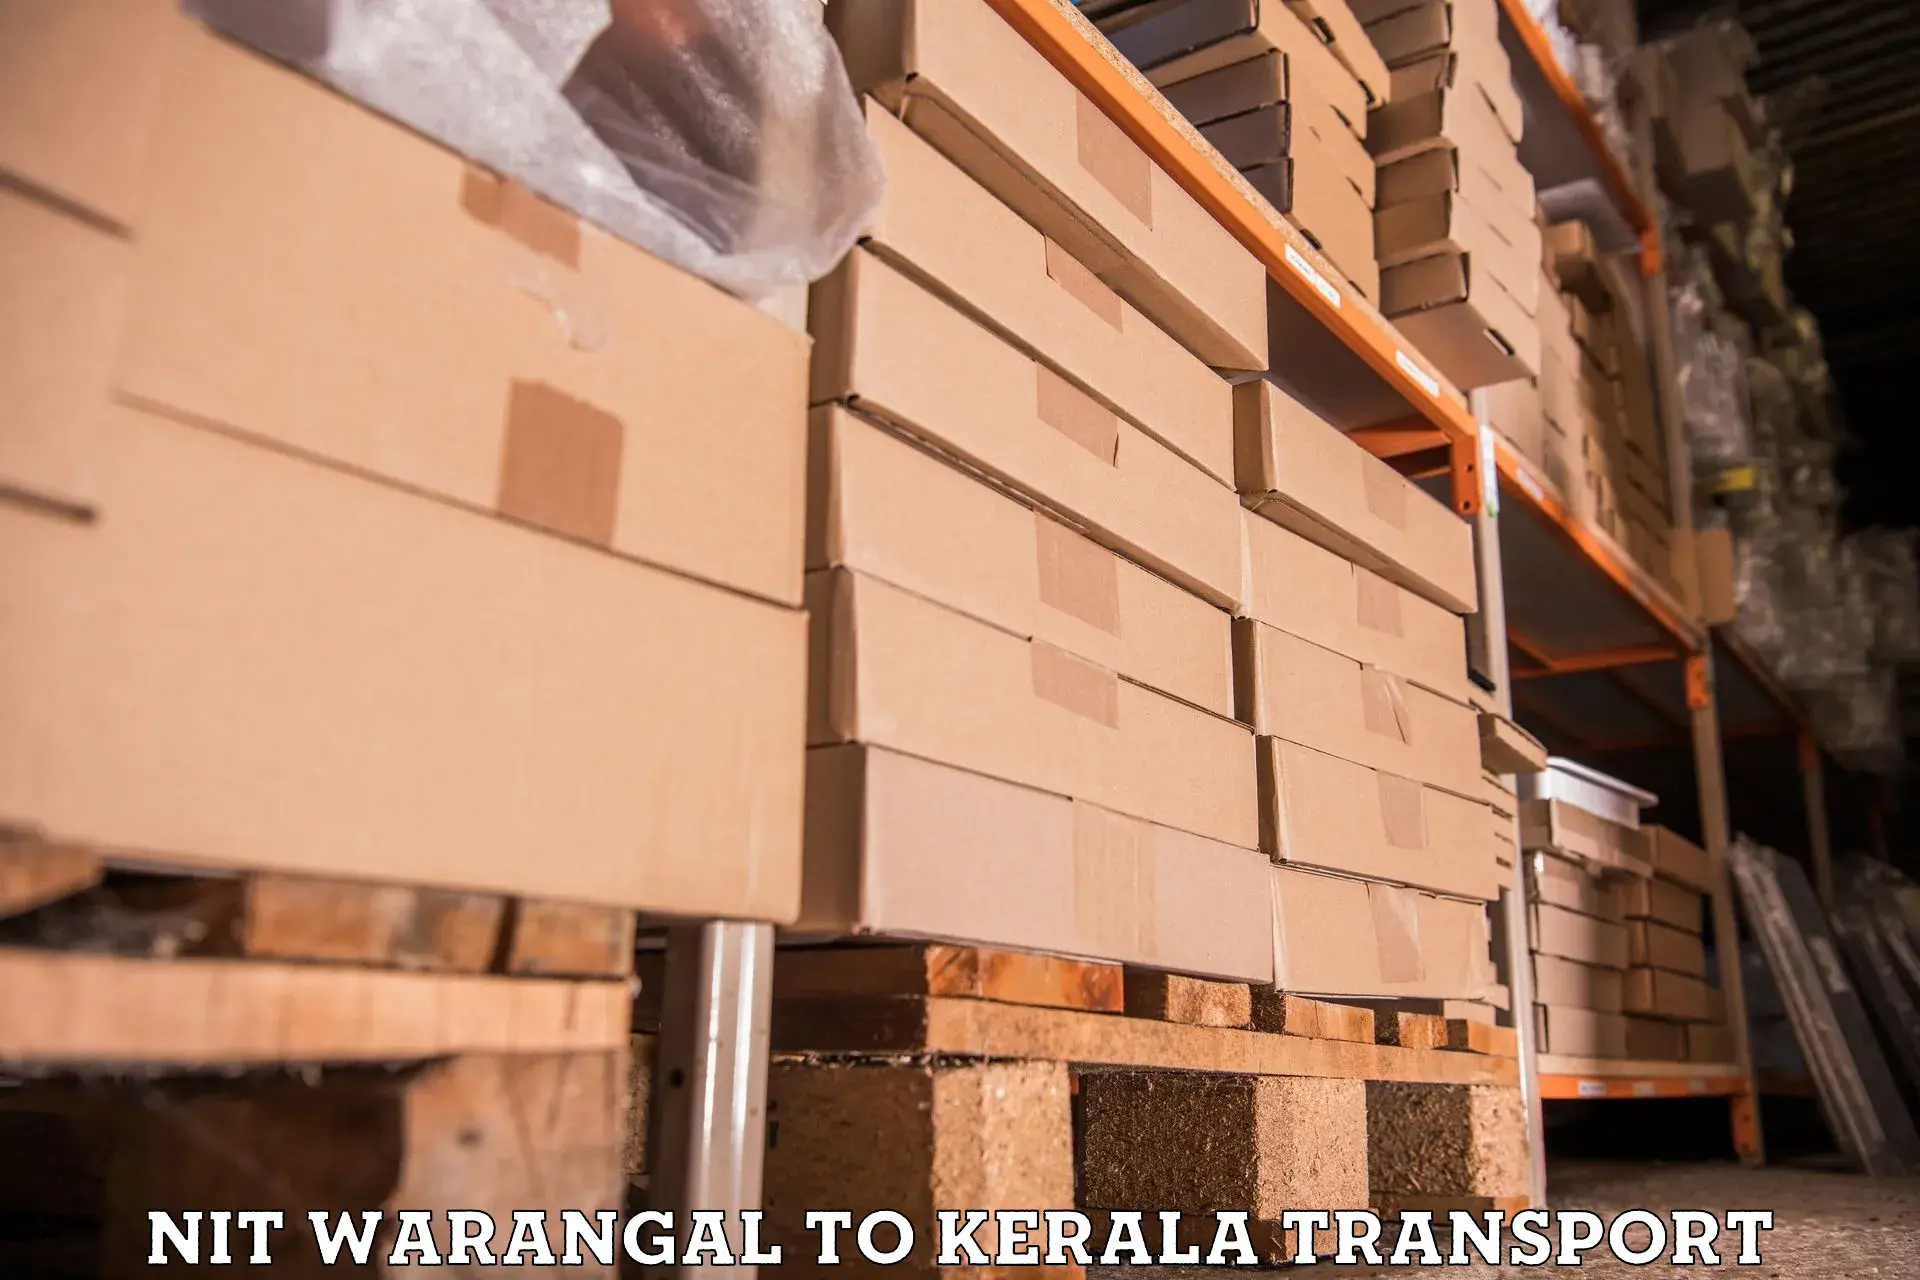 Transport in sharing in NIT Warangal to Kottayam